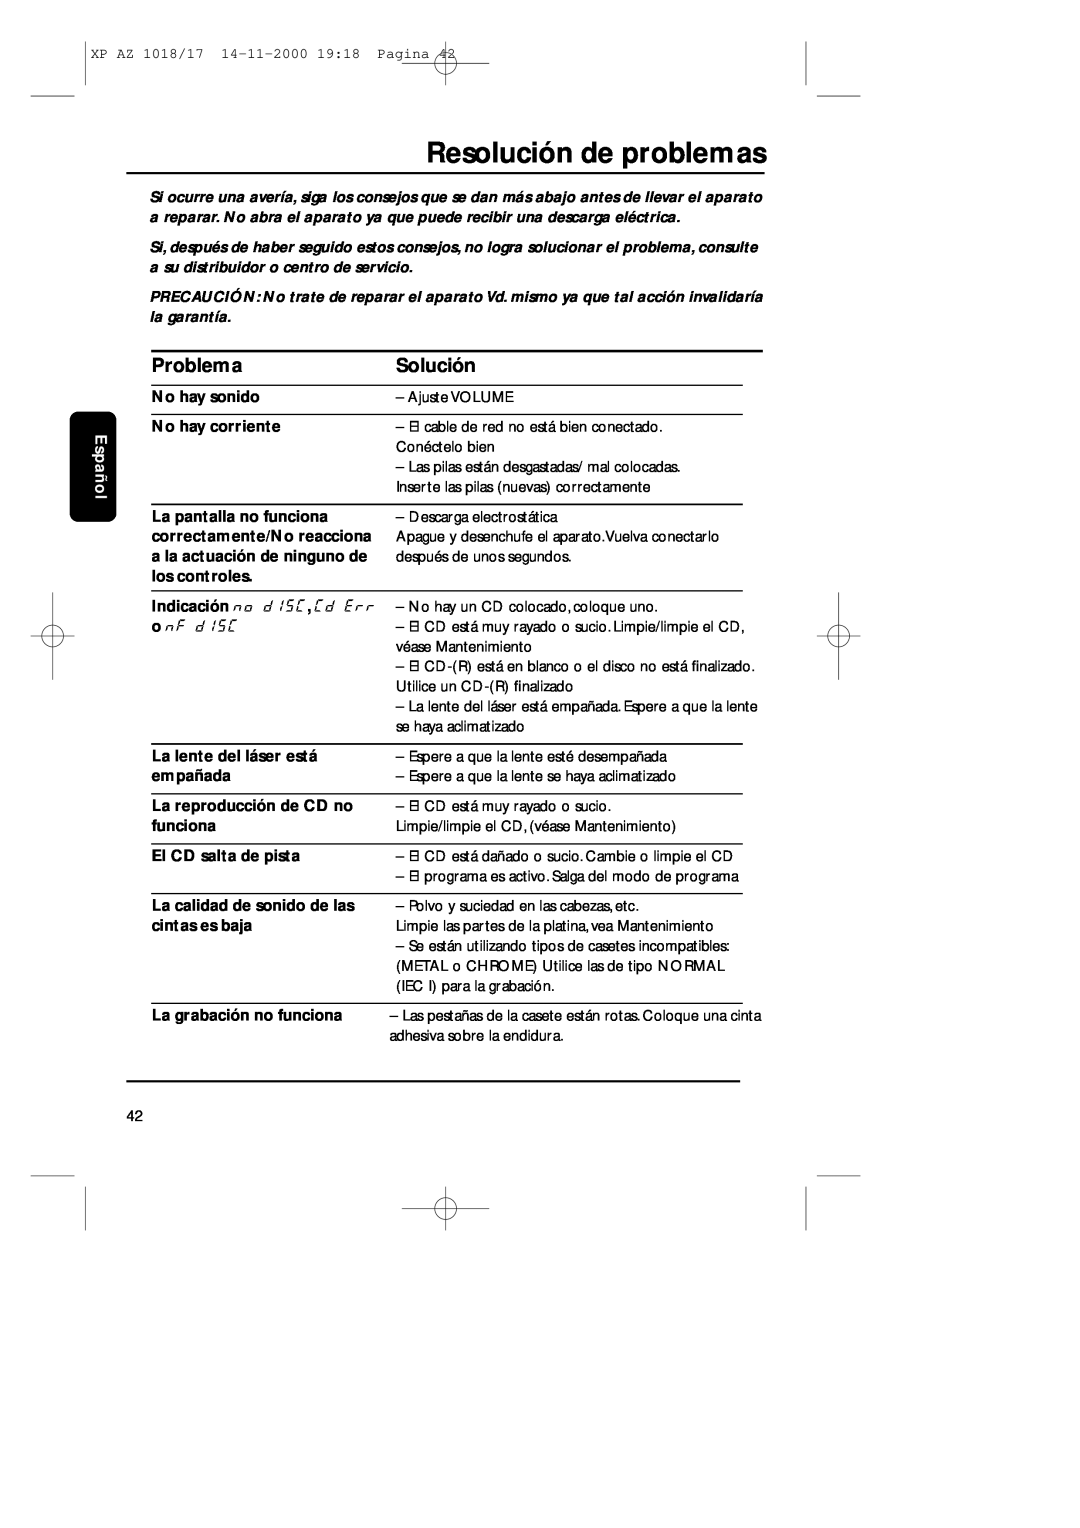 Philips 1018 manual Resolución de problemas, Problema, Solución, Español, No hay sonido, No hay corriente, los controles 